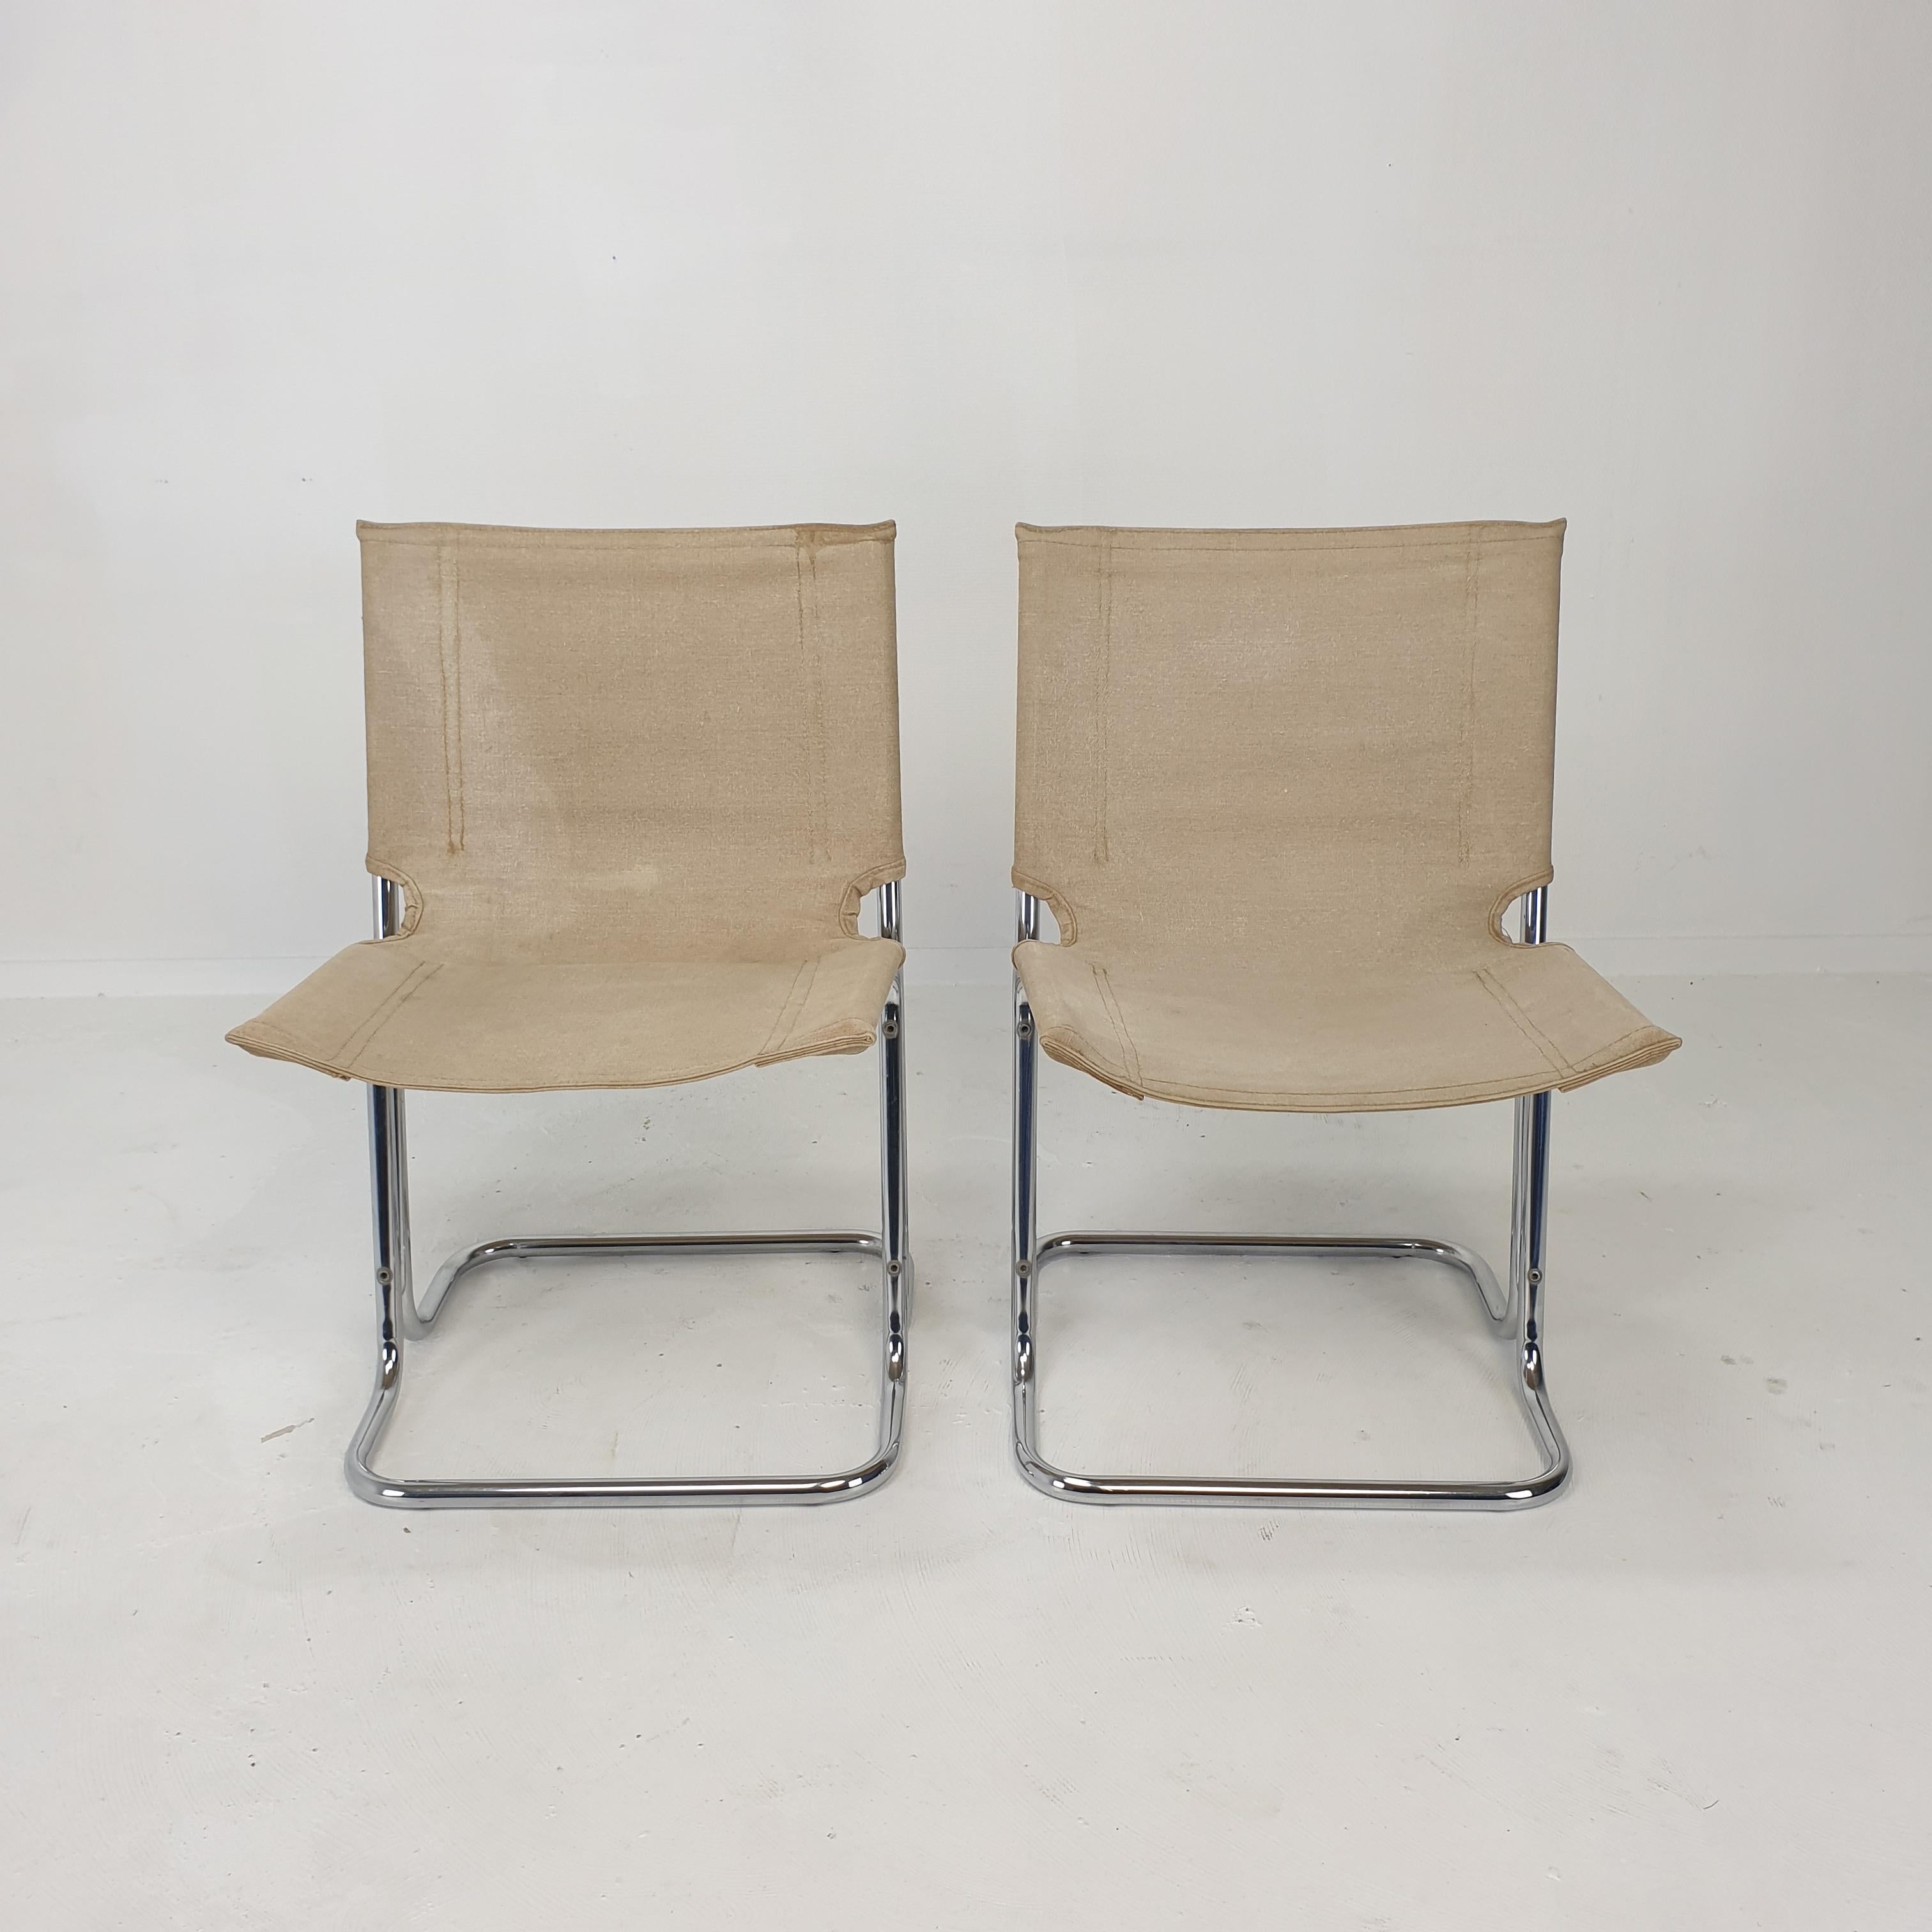 Sehr schöner Satz von 2 italienischen (Ess-)Stühlen, hergestellt in den 70er Jahren. 

Ein markantes Design mit interessanten Details, die ein architektonisches Erscheinungsbild ergeben. 

Sowohl Sitz- als auch Rückenlehne haben ihre hochwertigen